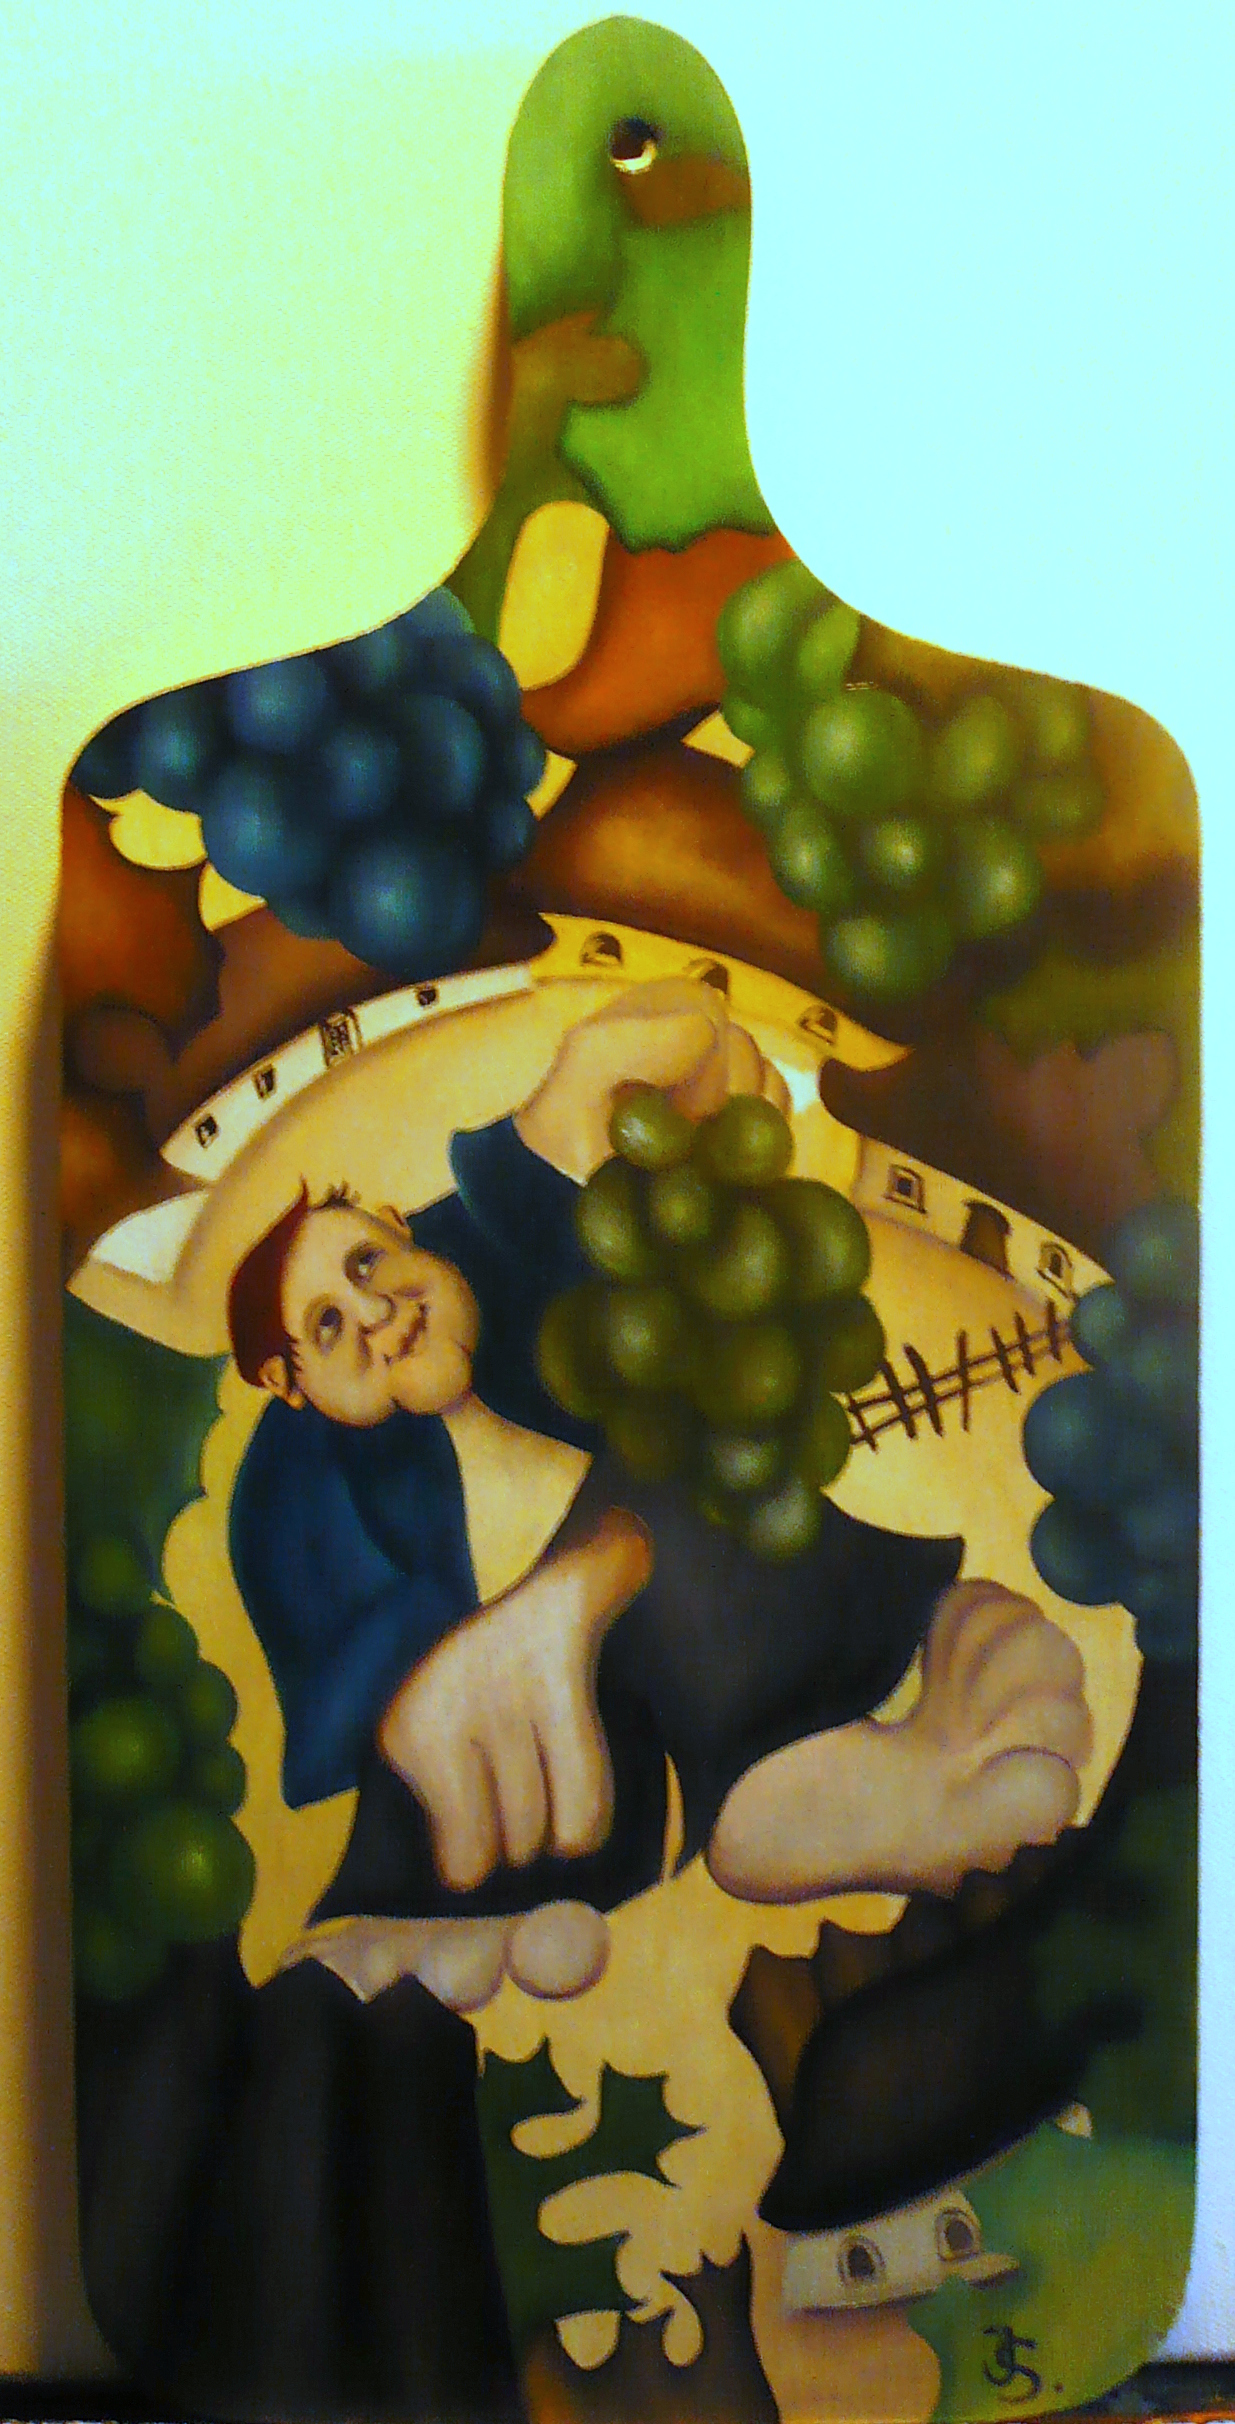 vinaři/ growers